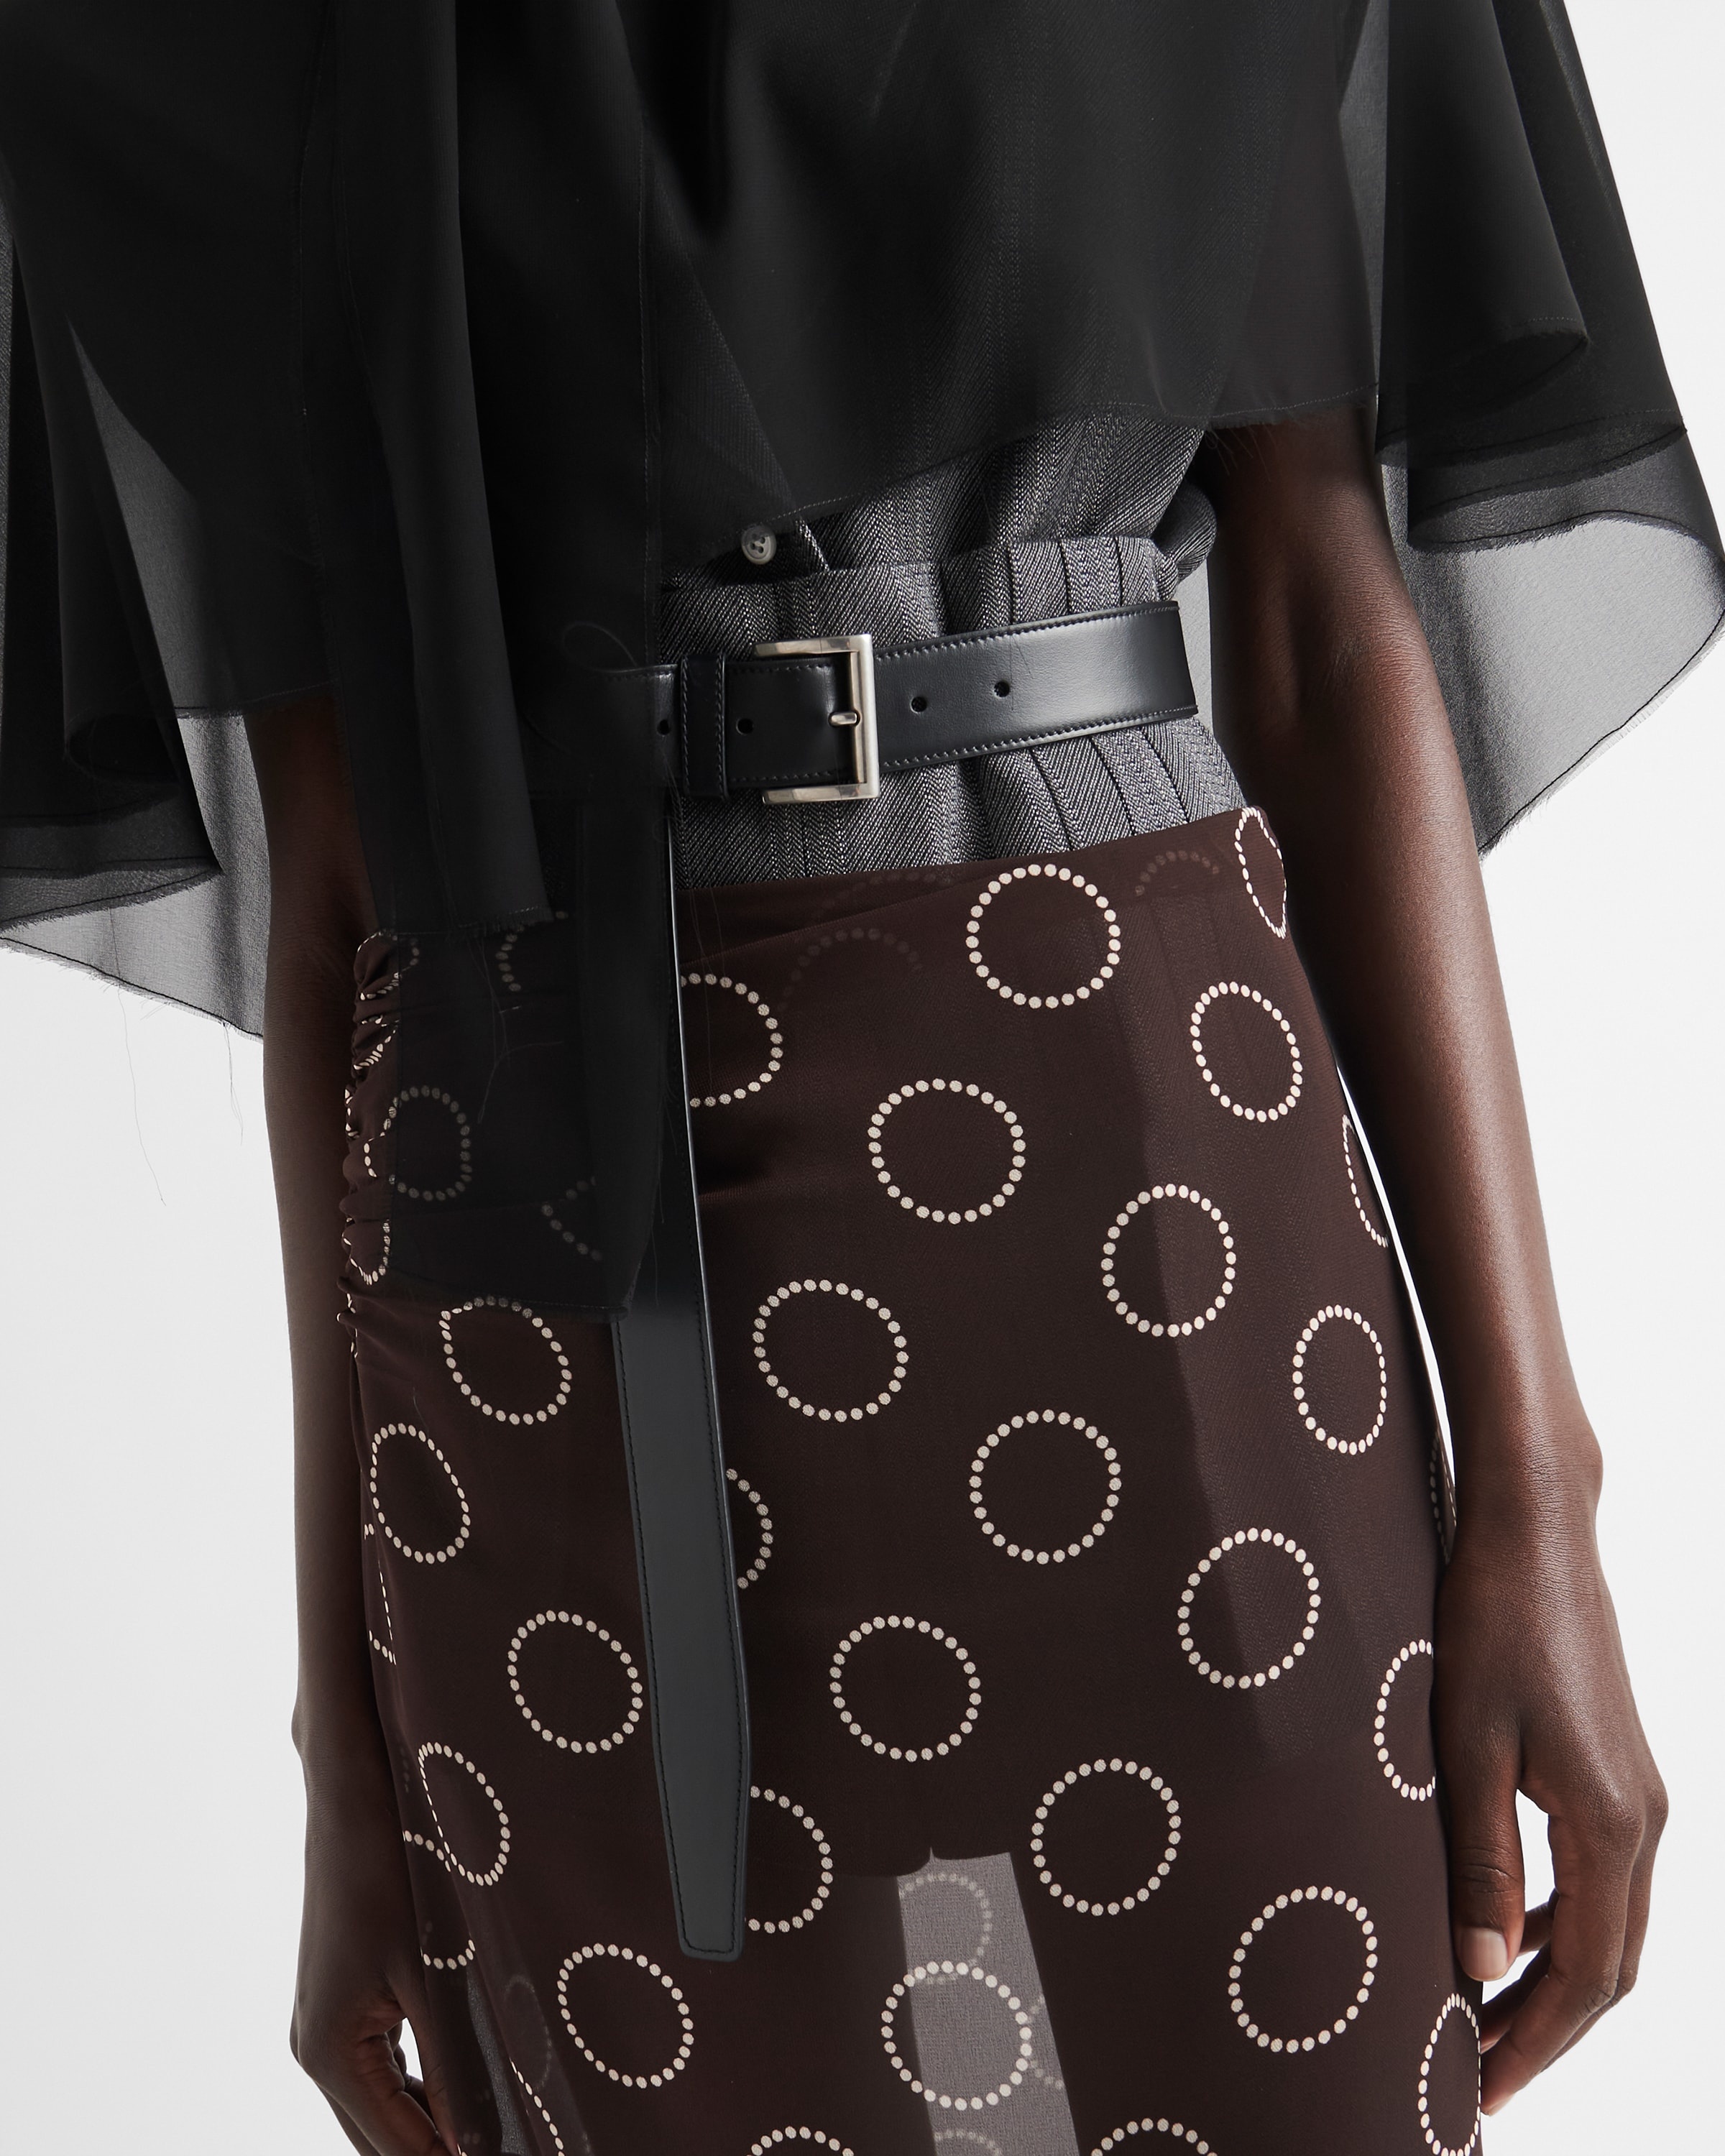 Printed georgette skirt - 6